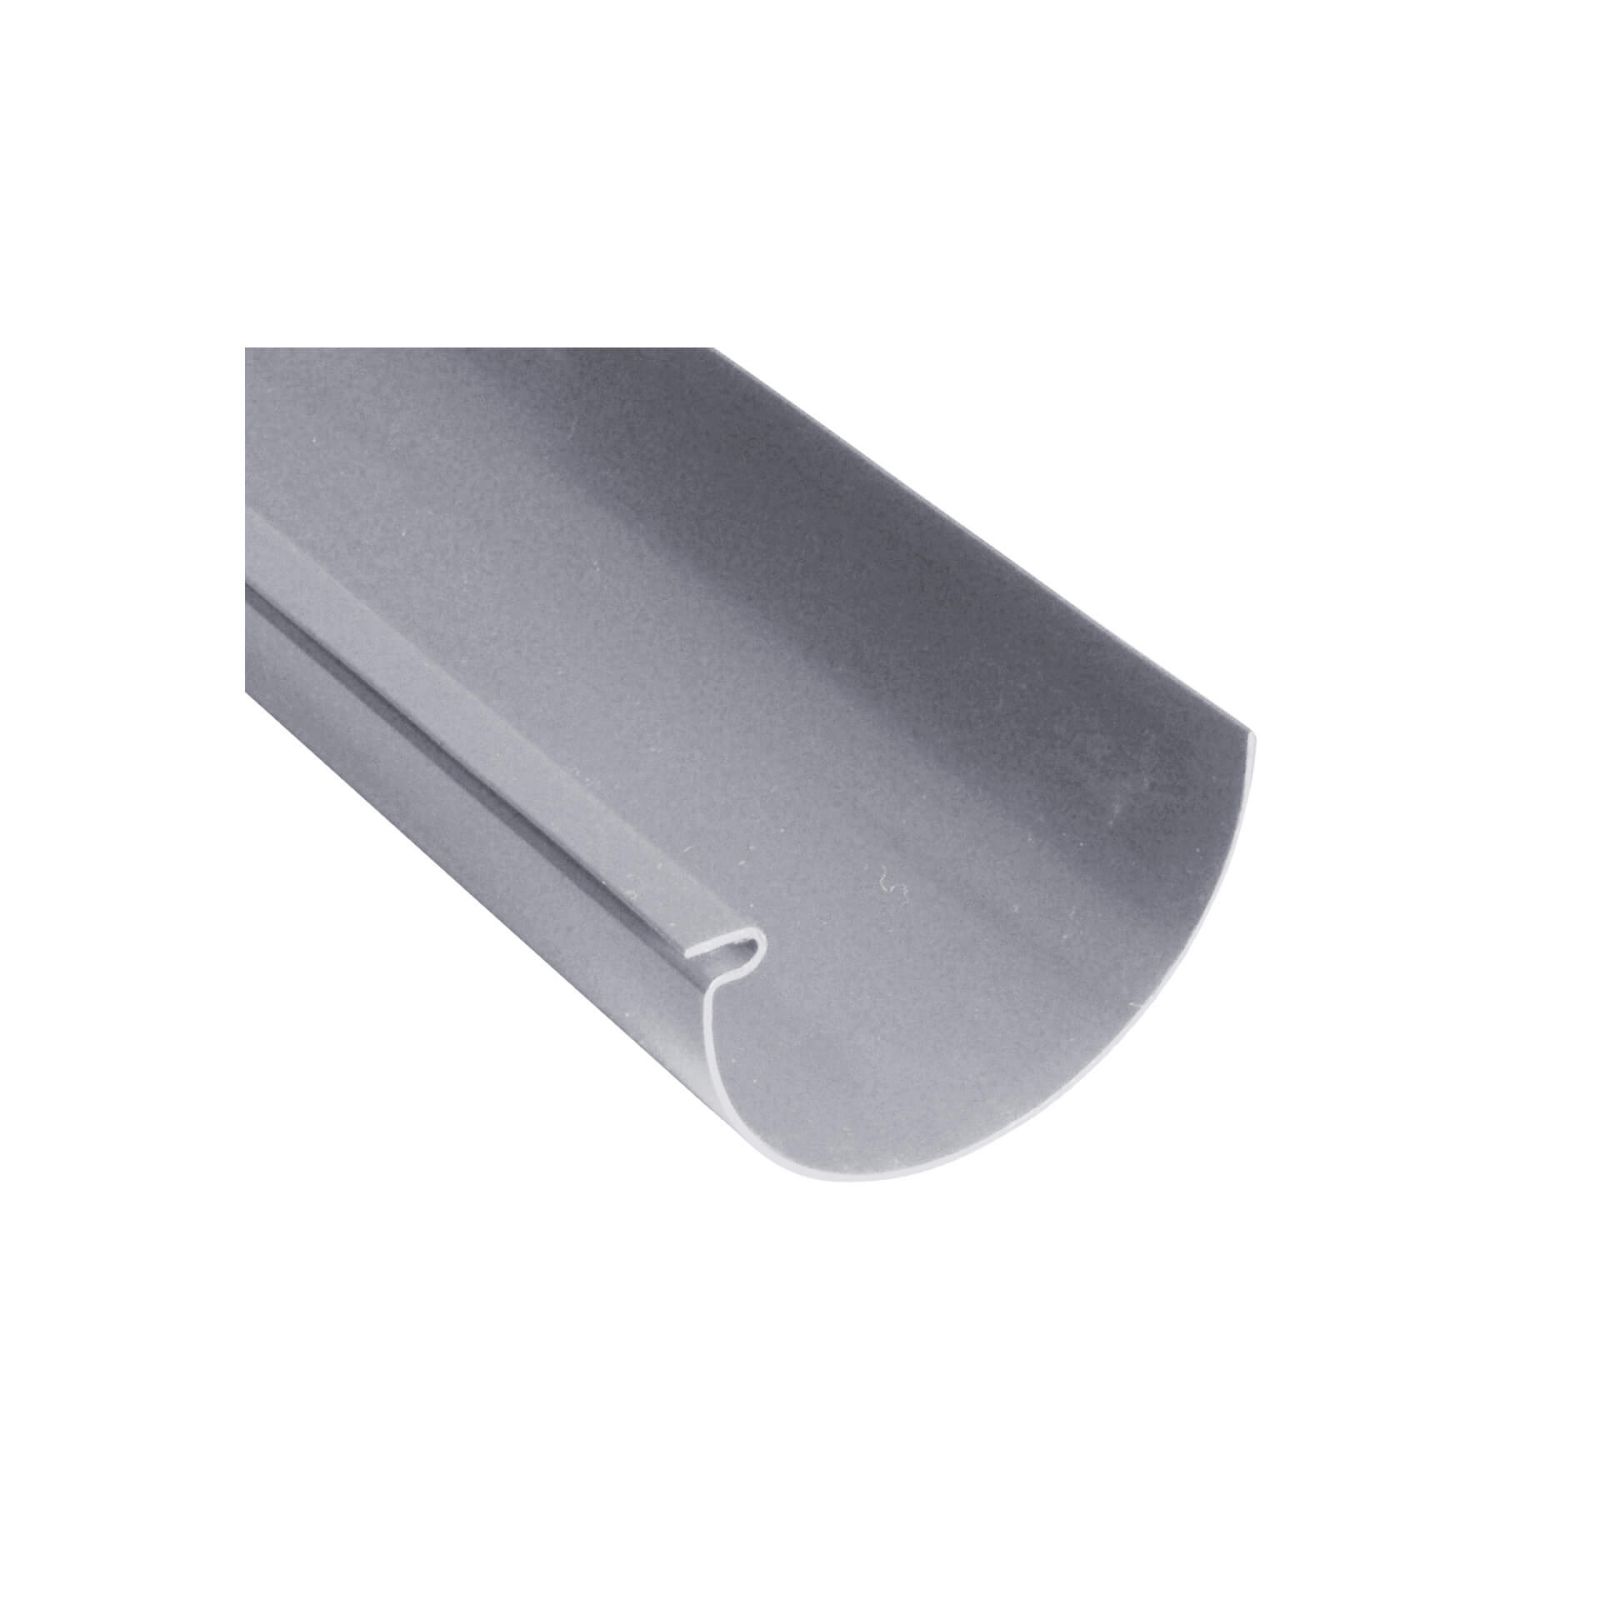 Kunststoff Dachrinnen Sparpaket 10 m | Ø 150/110 mm | Farbe Grau